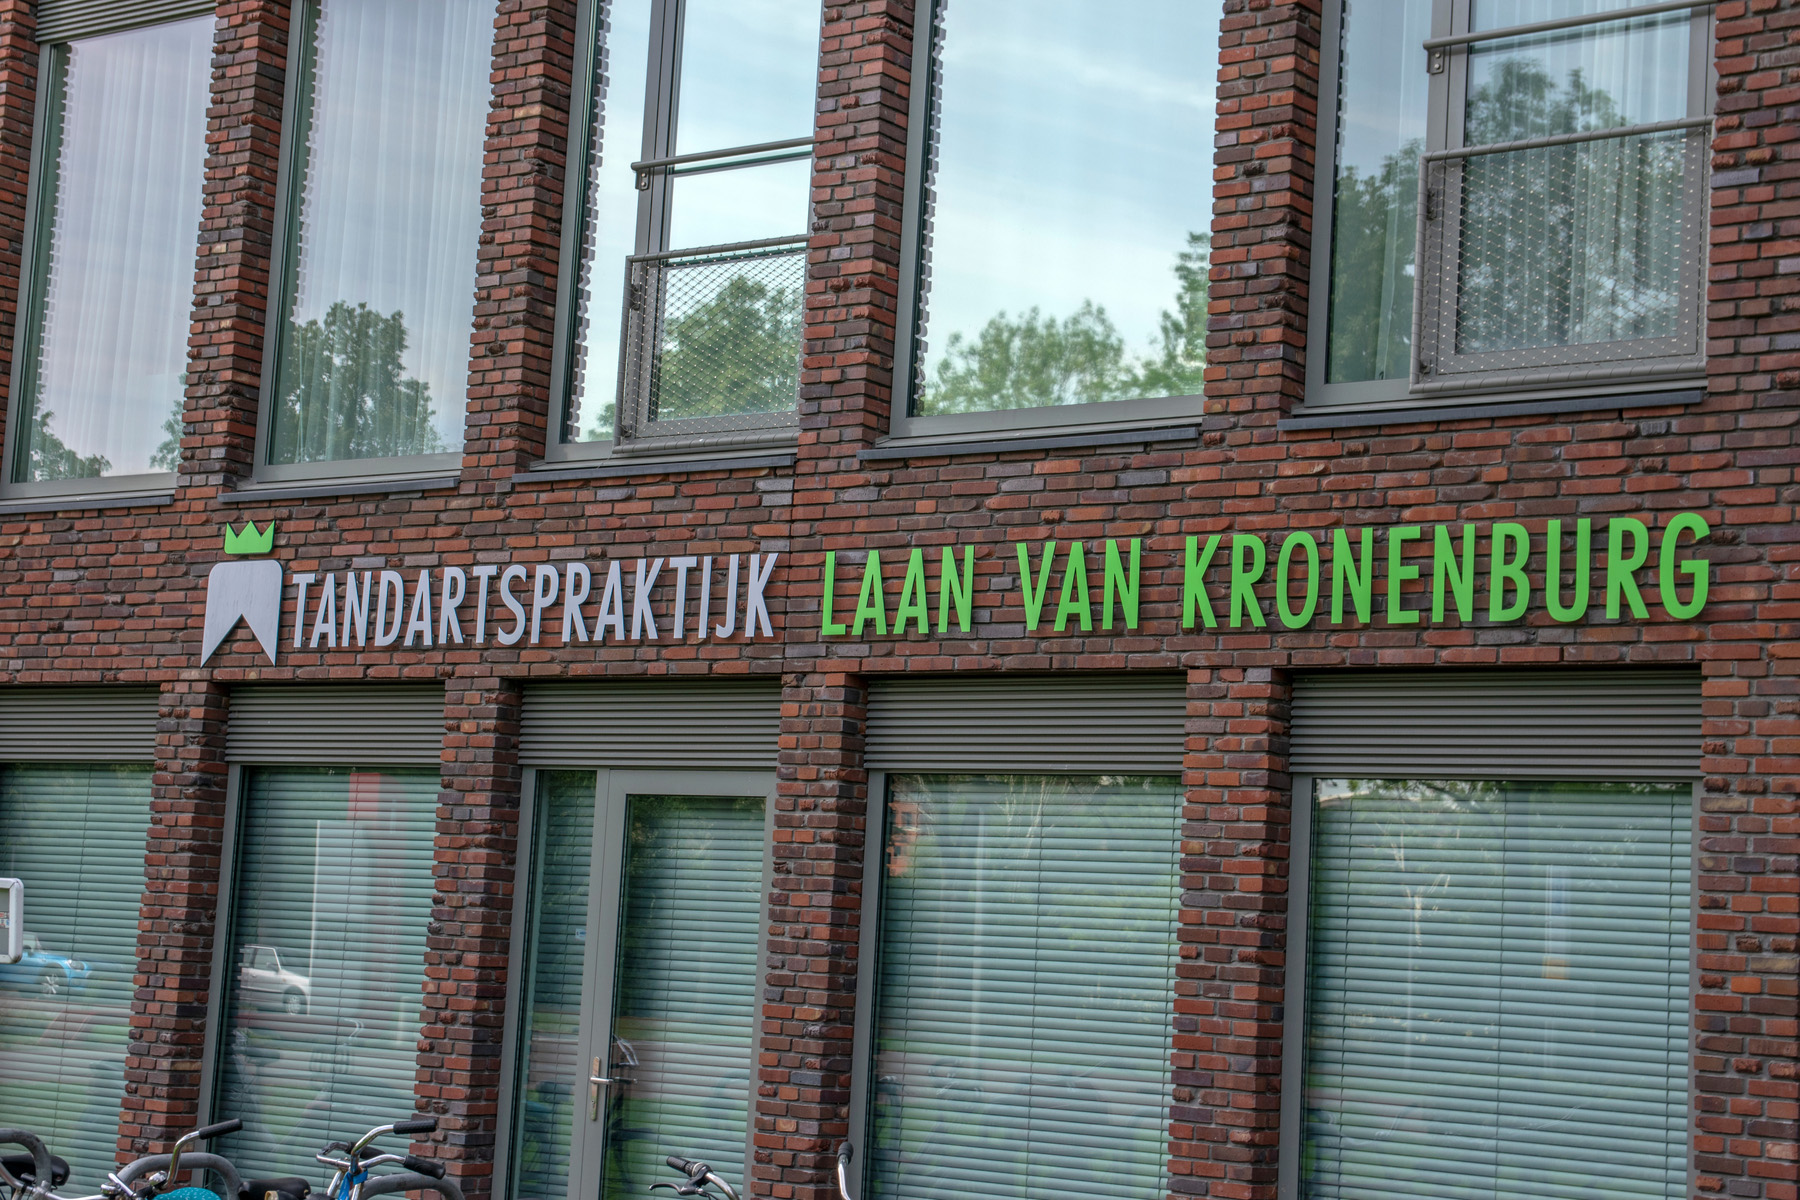 Laan Van Kronenburg dental practice in Amstelveen